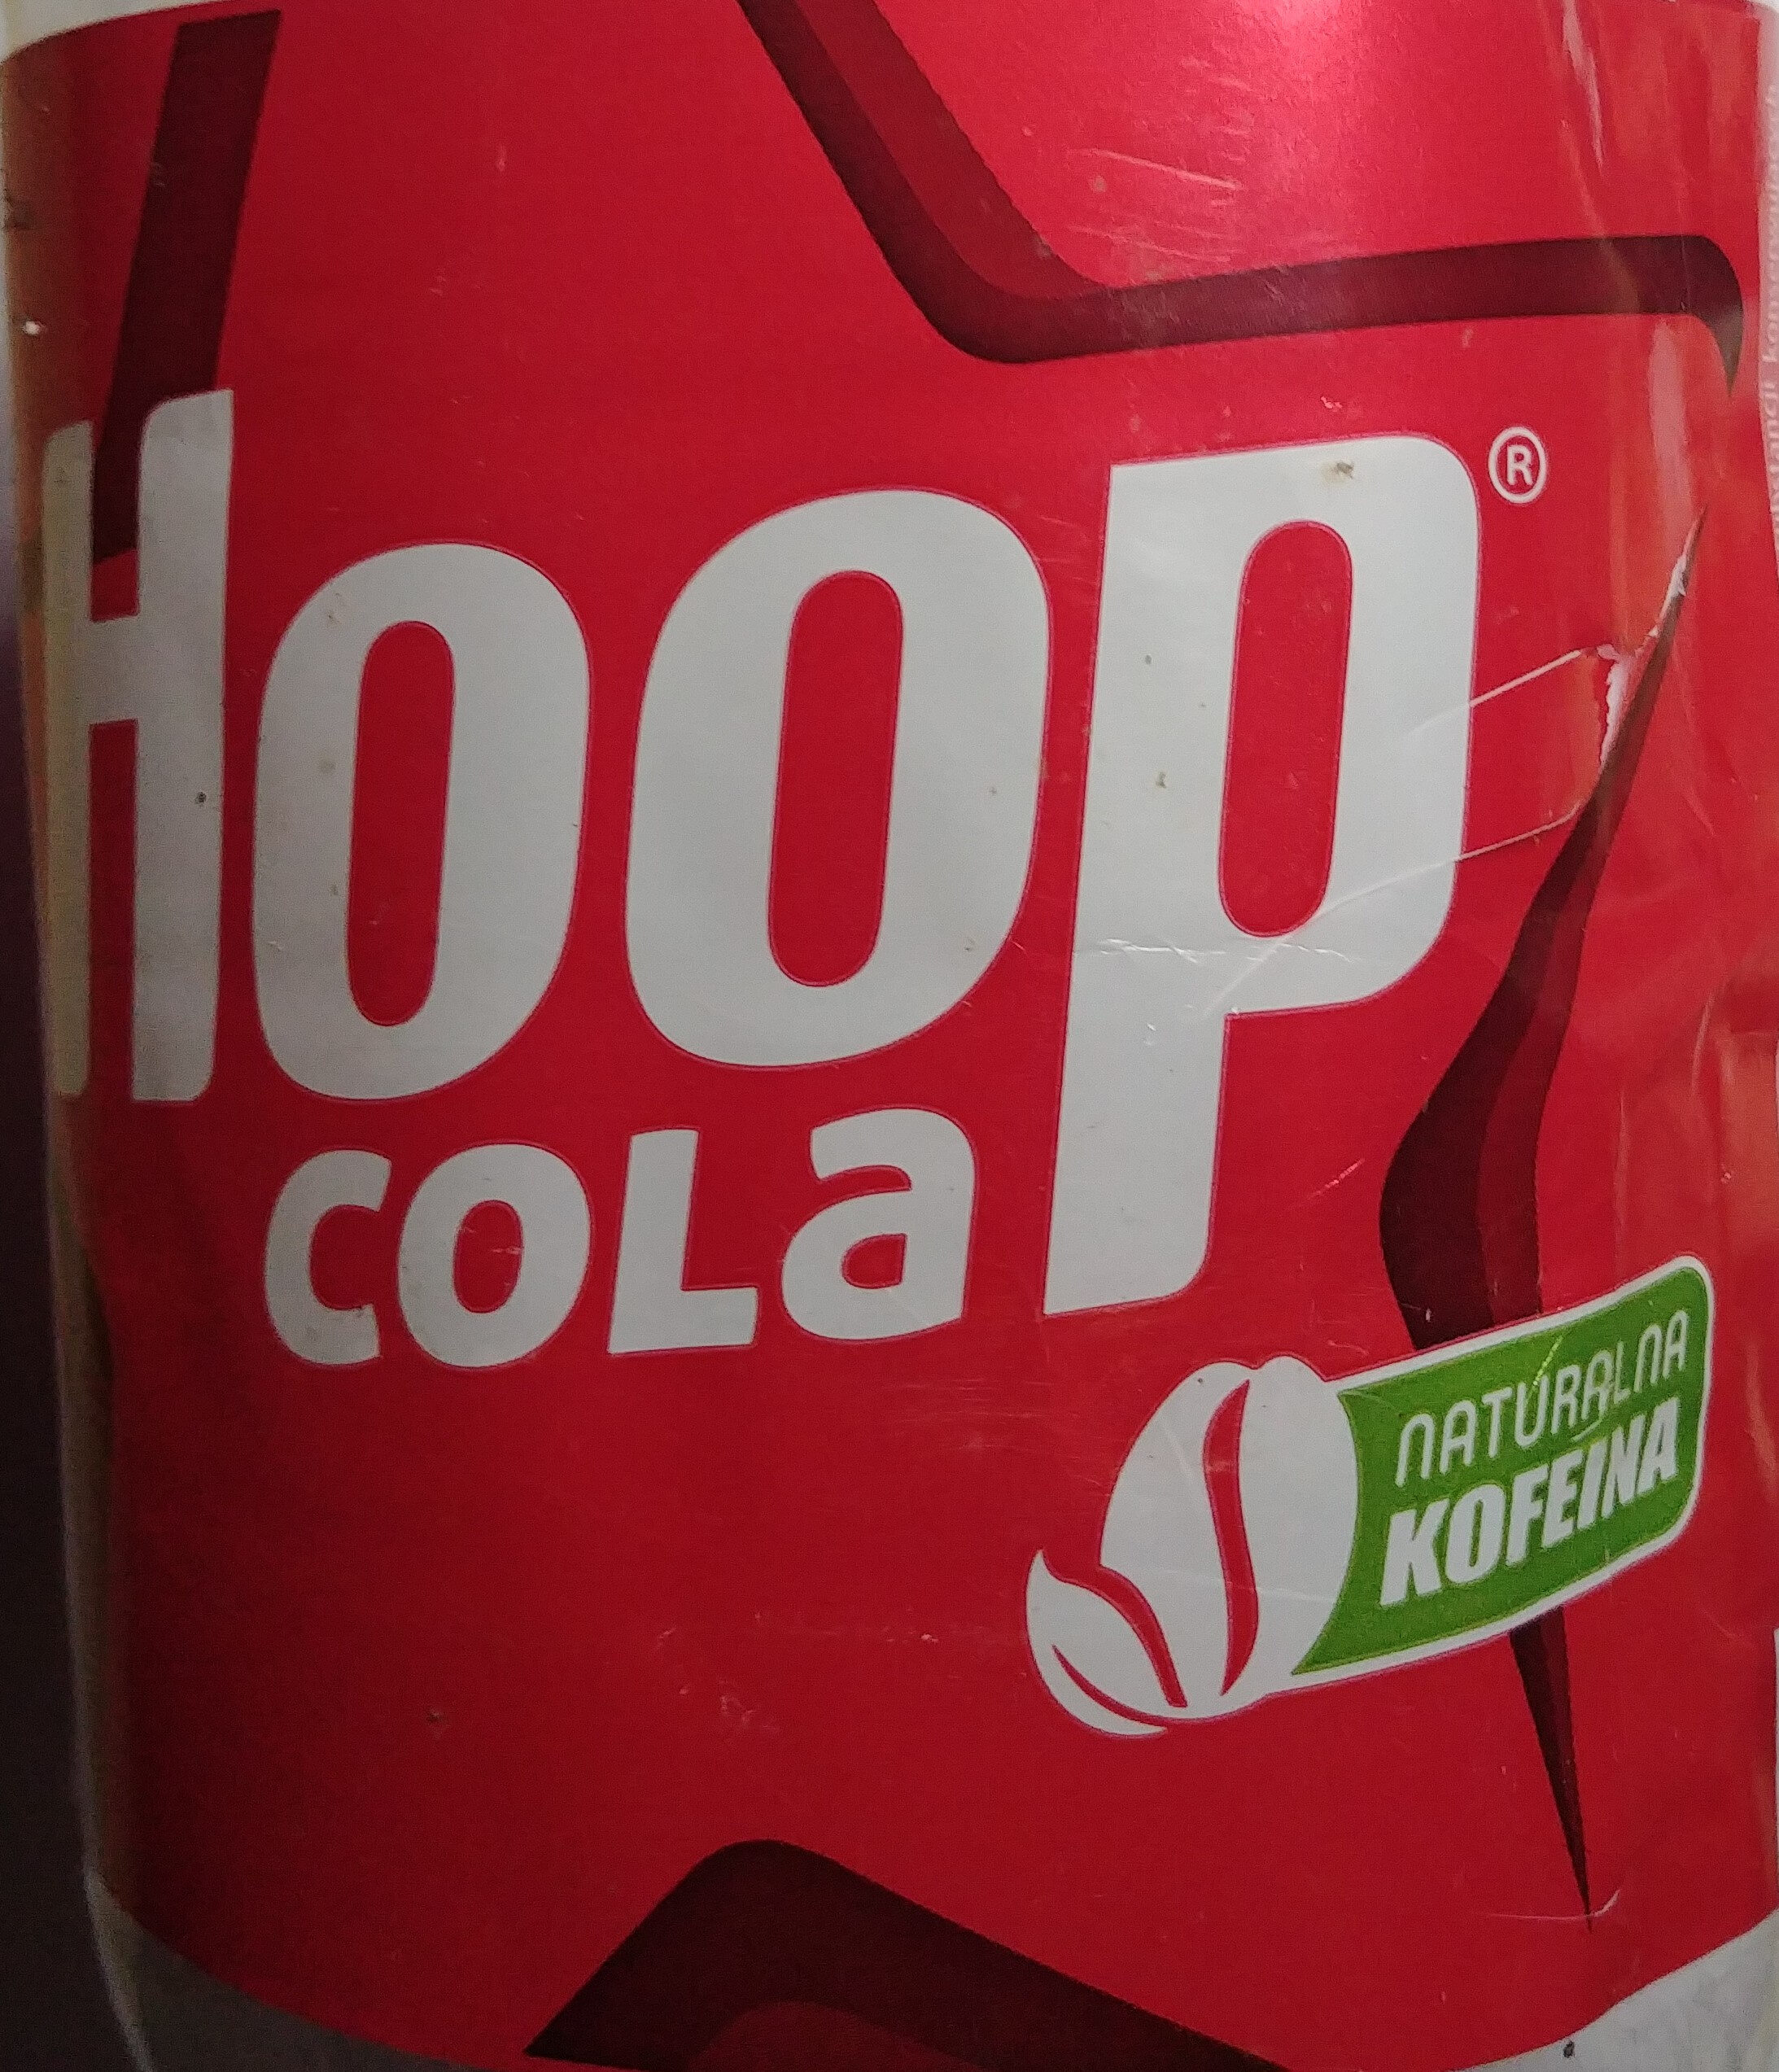 Hoop Cola - Produkt